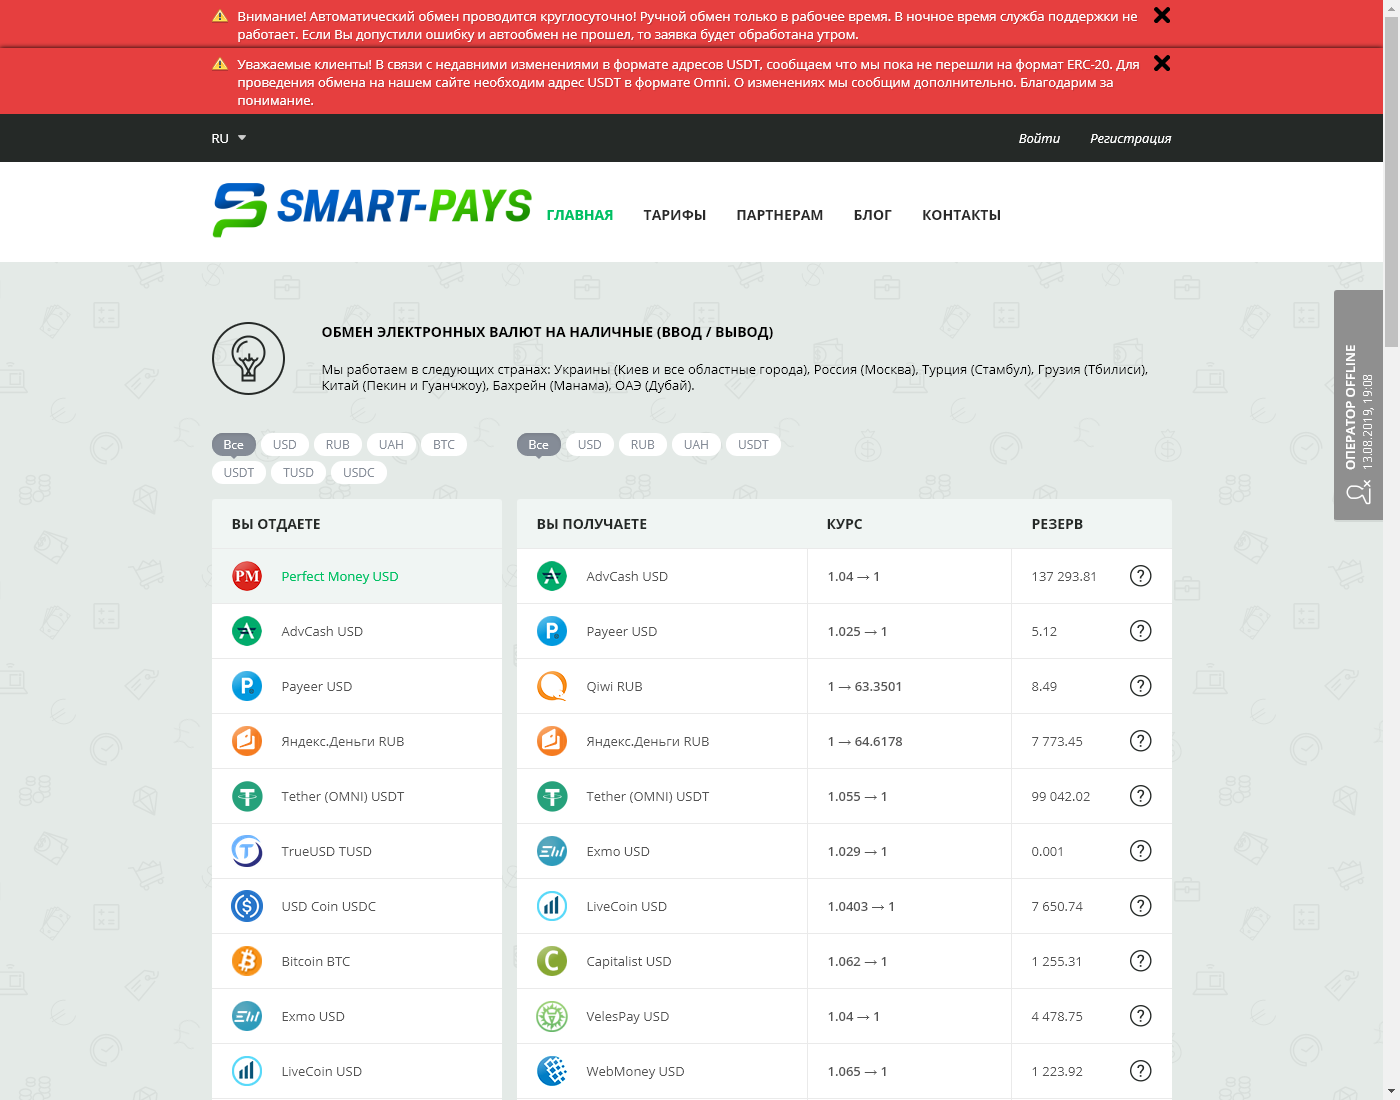 Smart-Pays интерфейс пользователя: домашняя страничка на языке — Русский